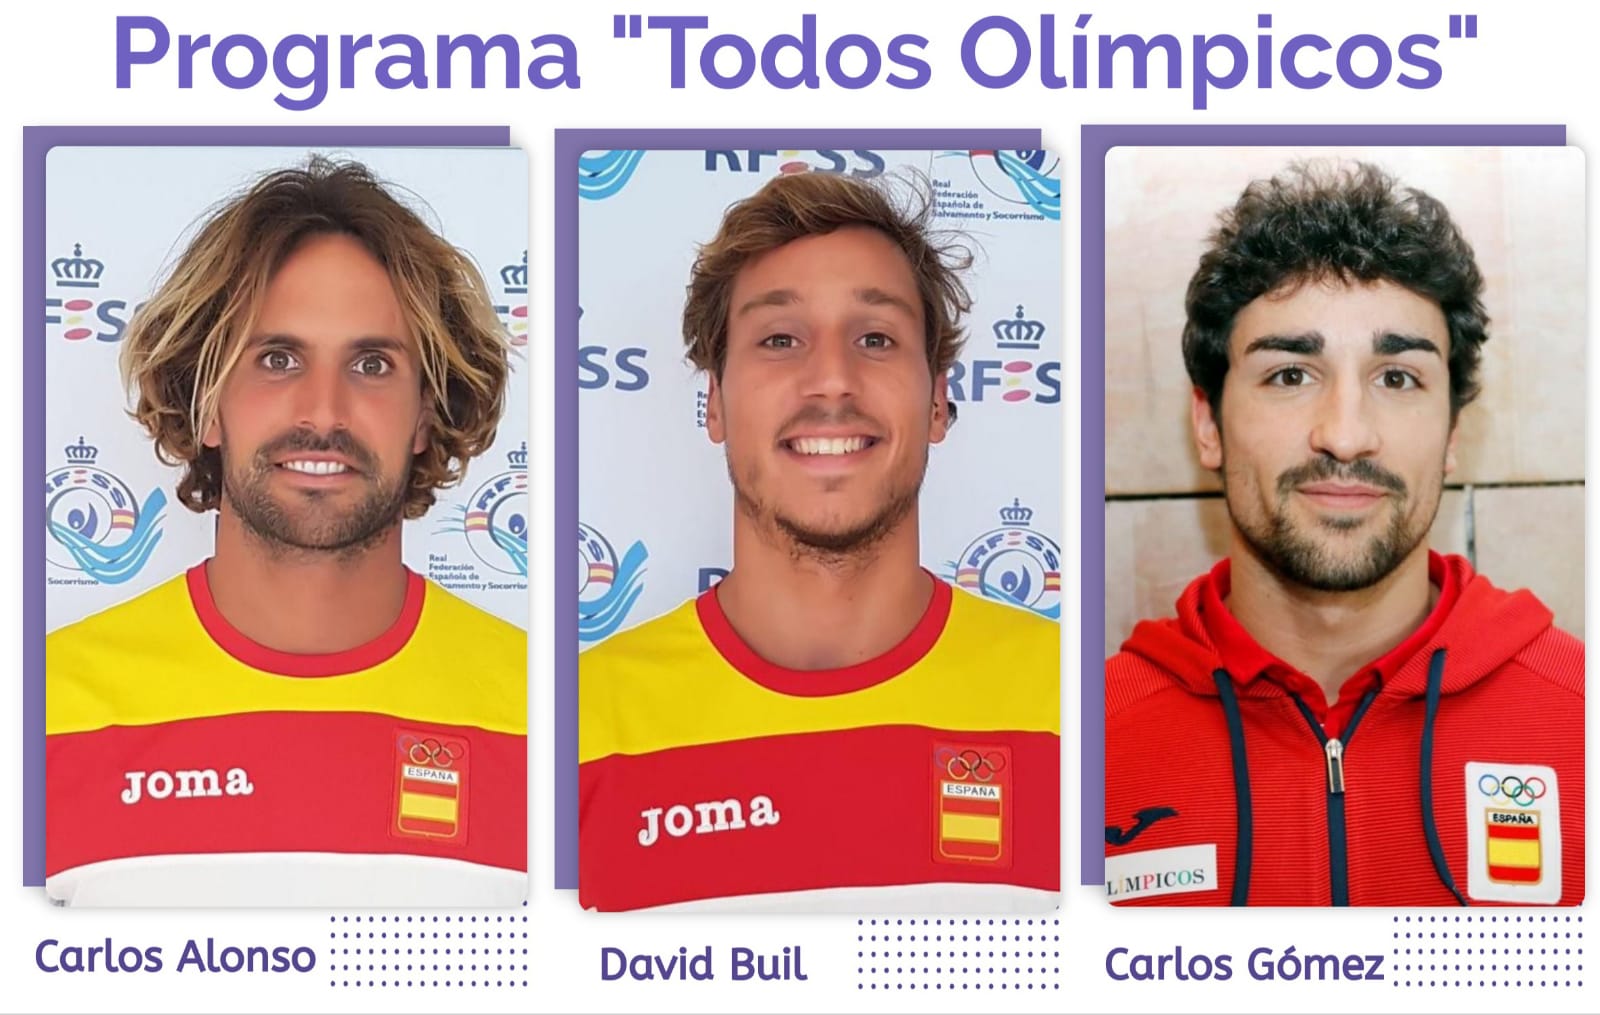 Los tres socorristas que forman o han formado parte de  la campaña de difusión de los valores olímpicos, Carlos Alonso, David Buil y Calos Gómez.